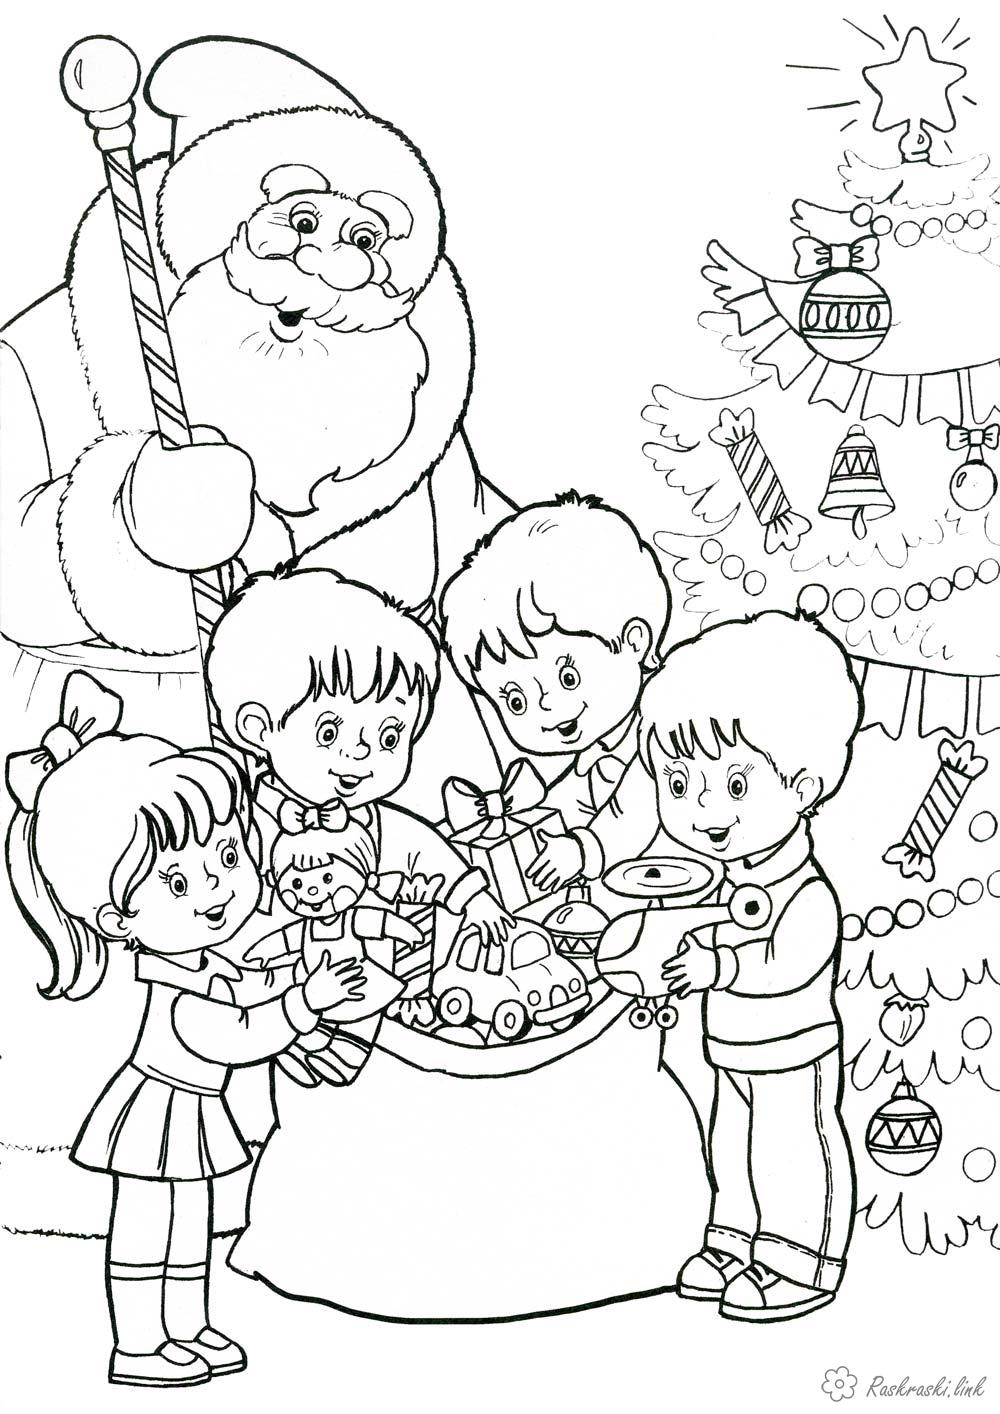 Раскраски Новый год Детская новогодняя раскарска Дед Мороз и детишки, разбирающие подарки